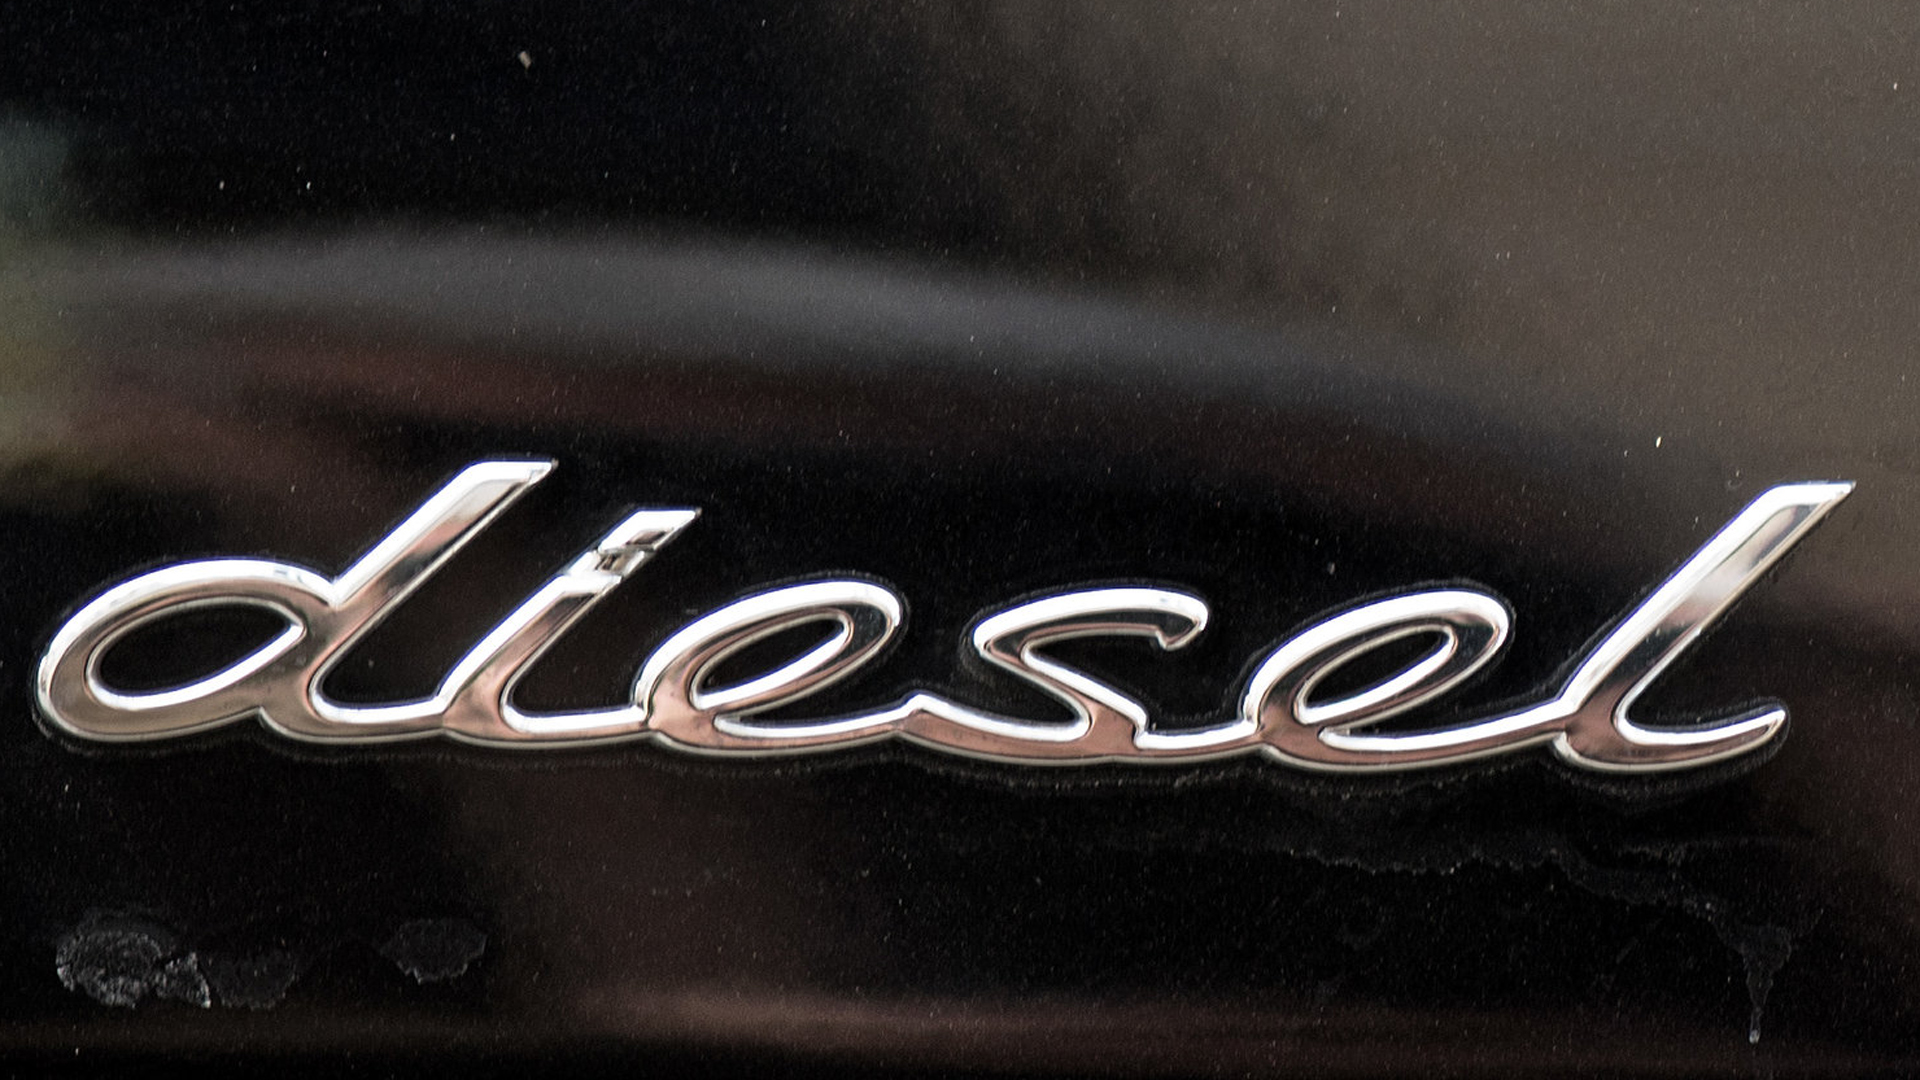 Kennzeichen mit der Aufschrift Diesel